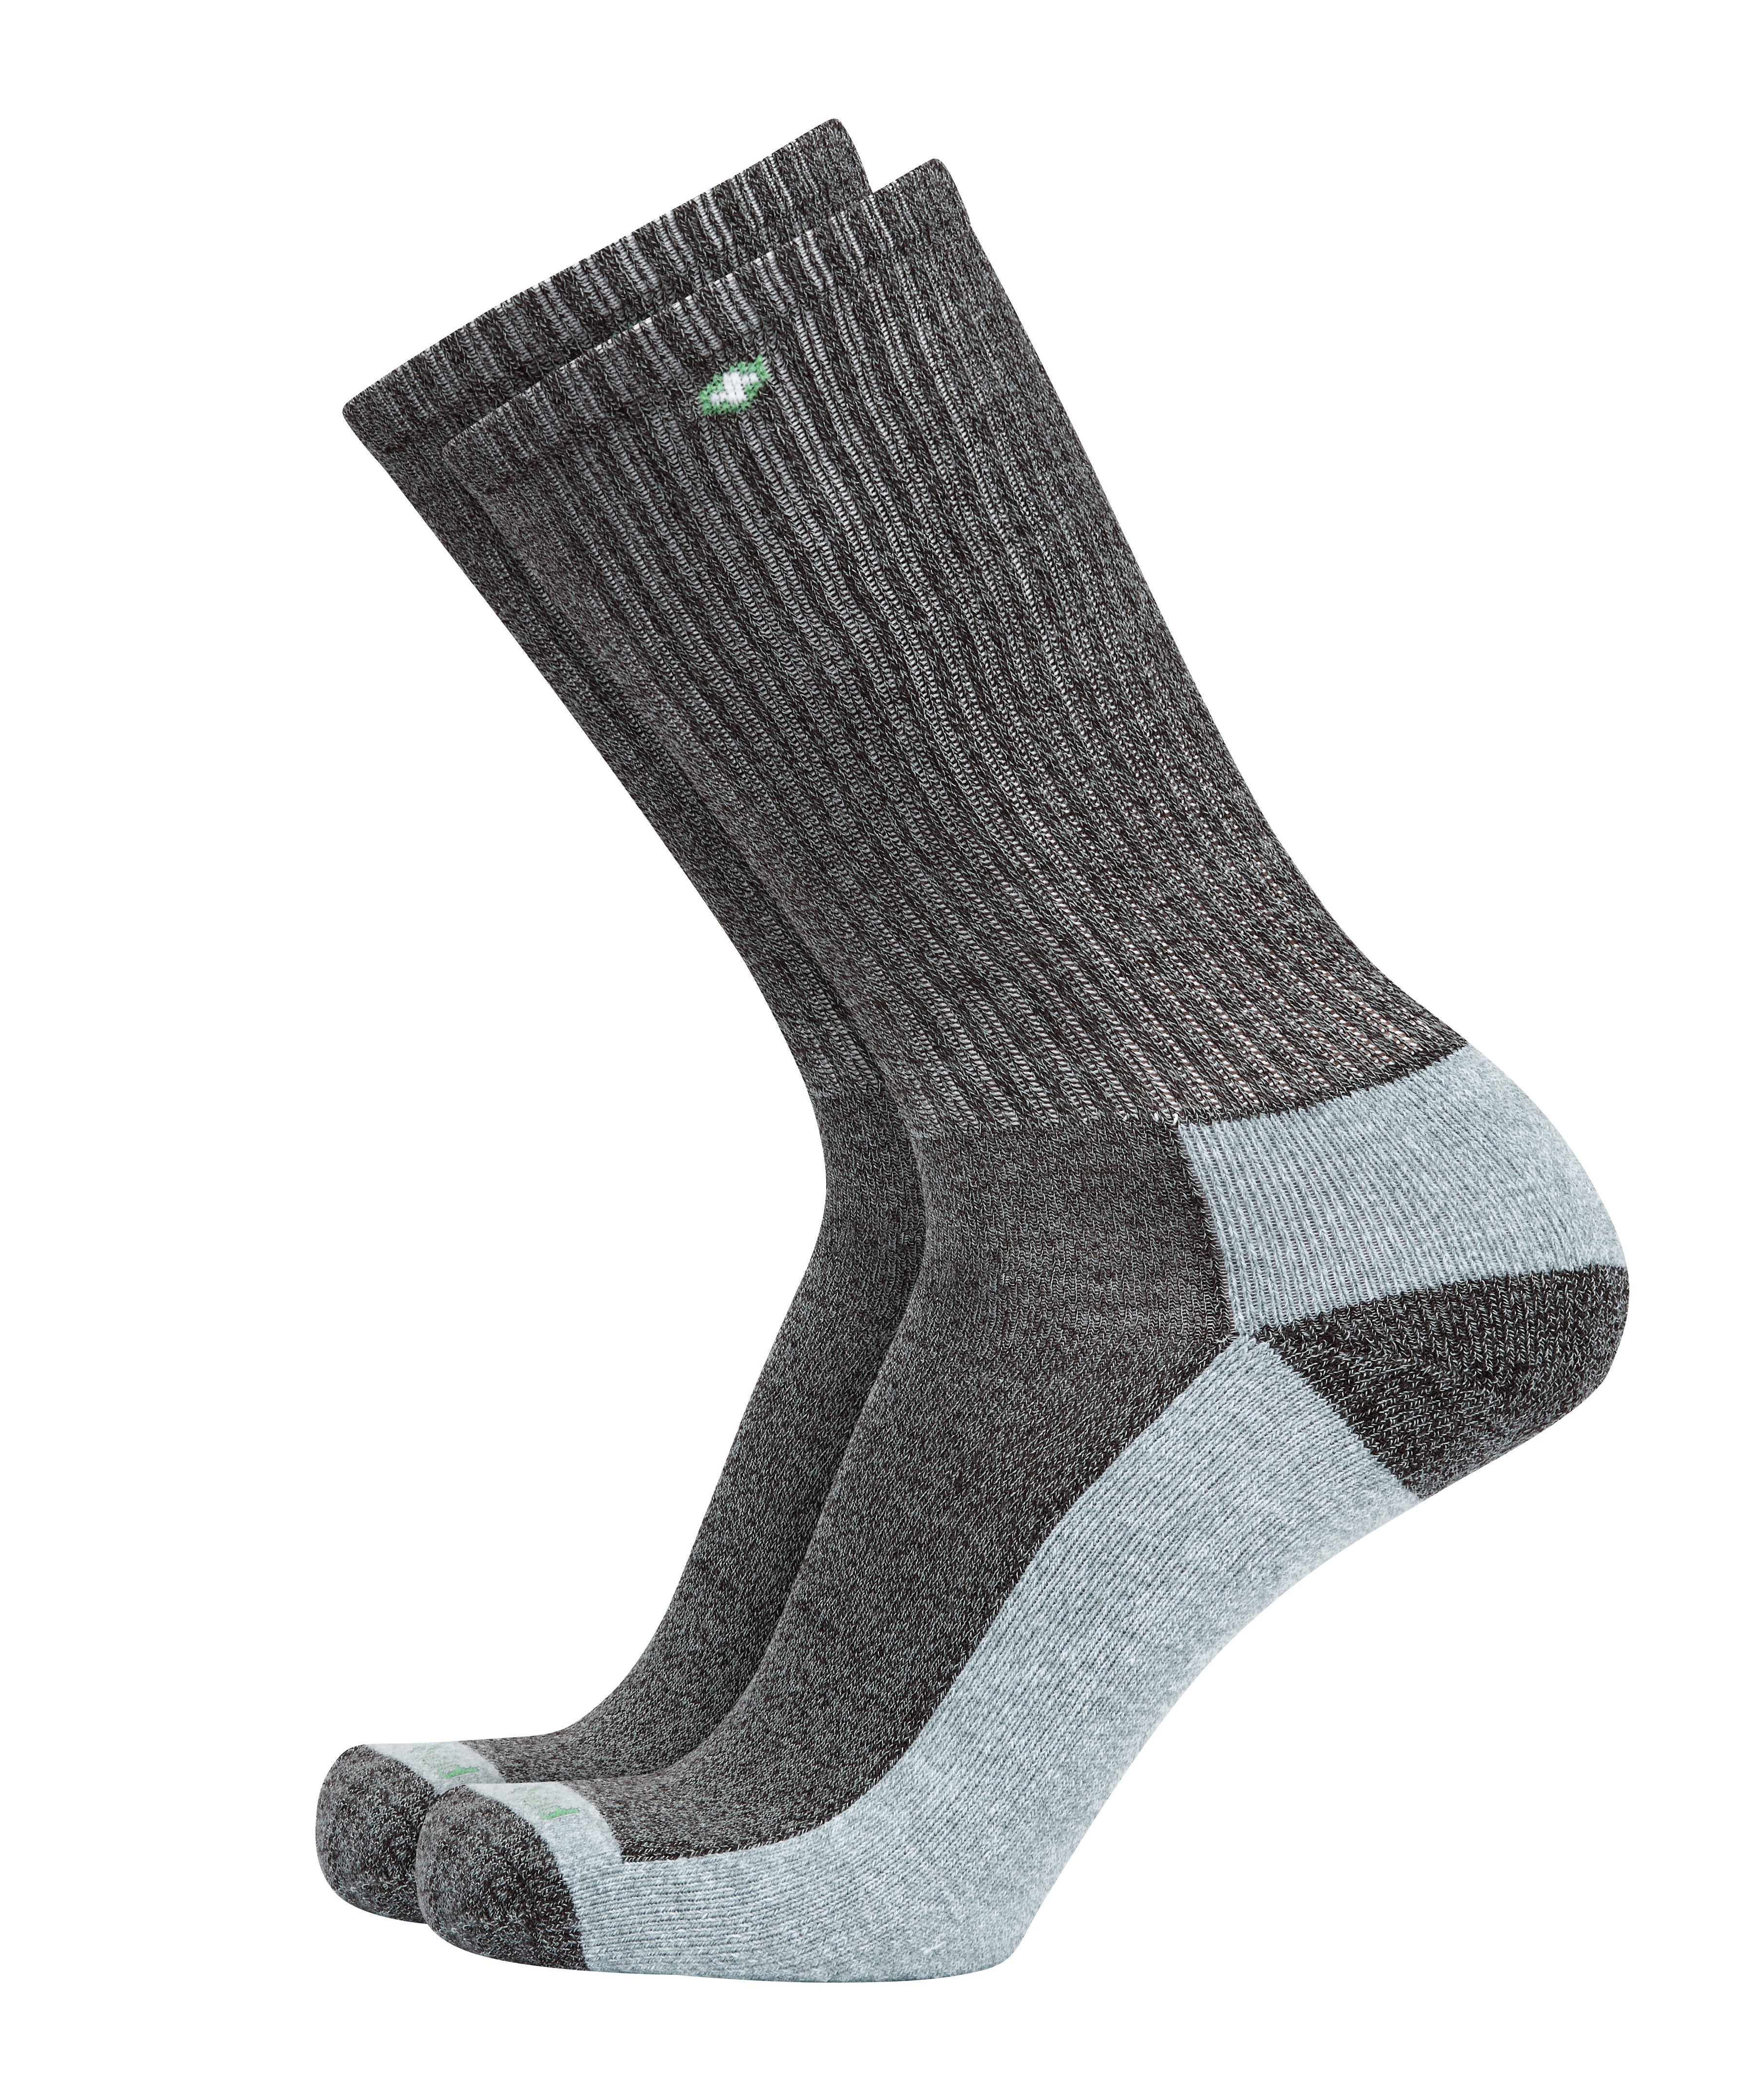 Footwear-Socks ISLS - Charcoal